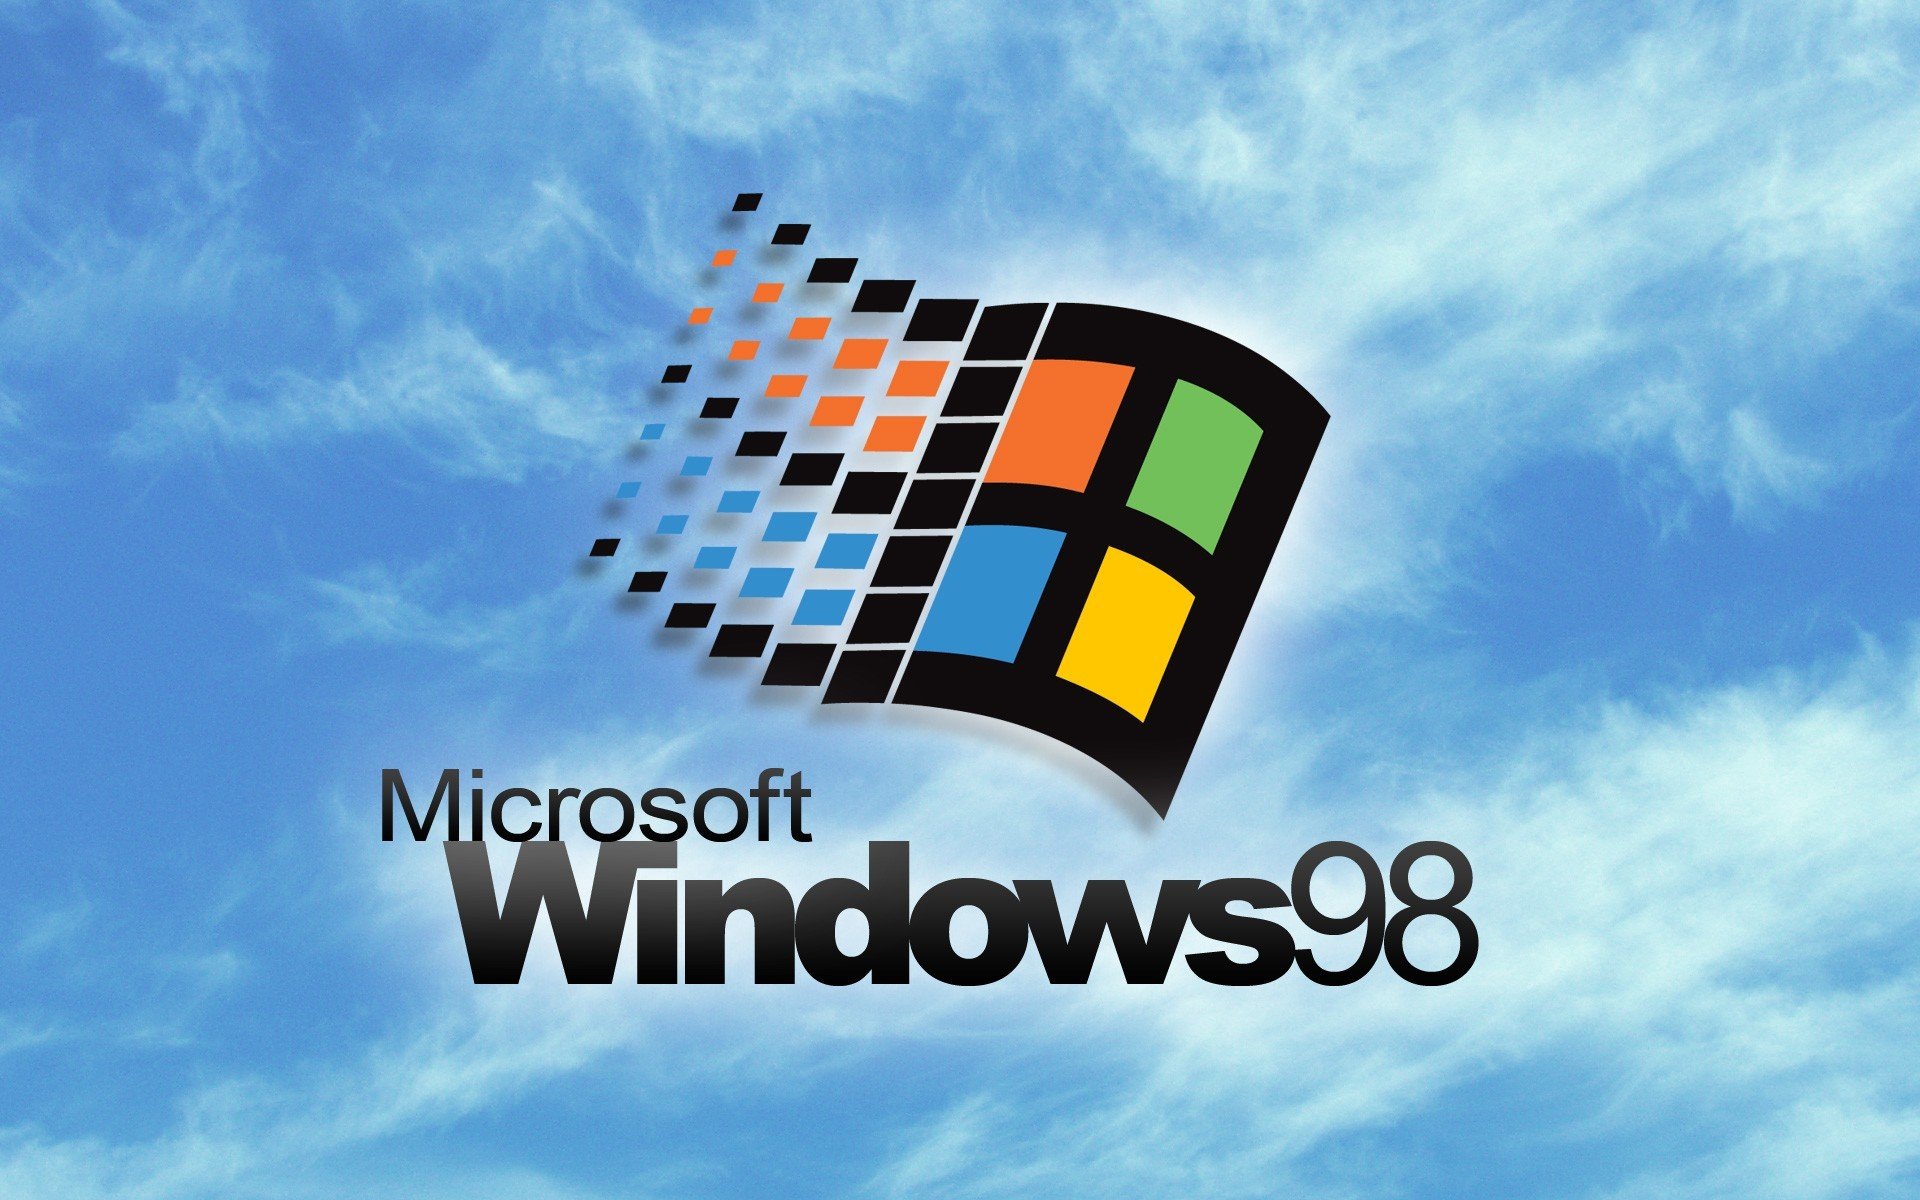 А какая Windows была первой у тебя? День рождения Windows 3.0 - 9